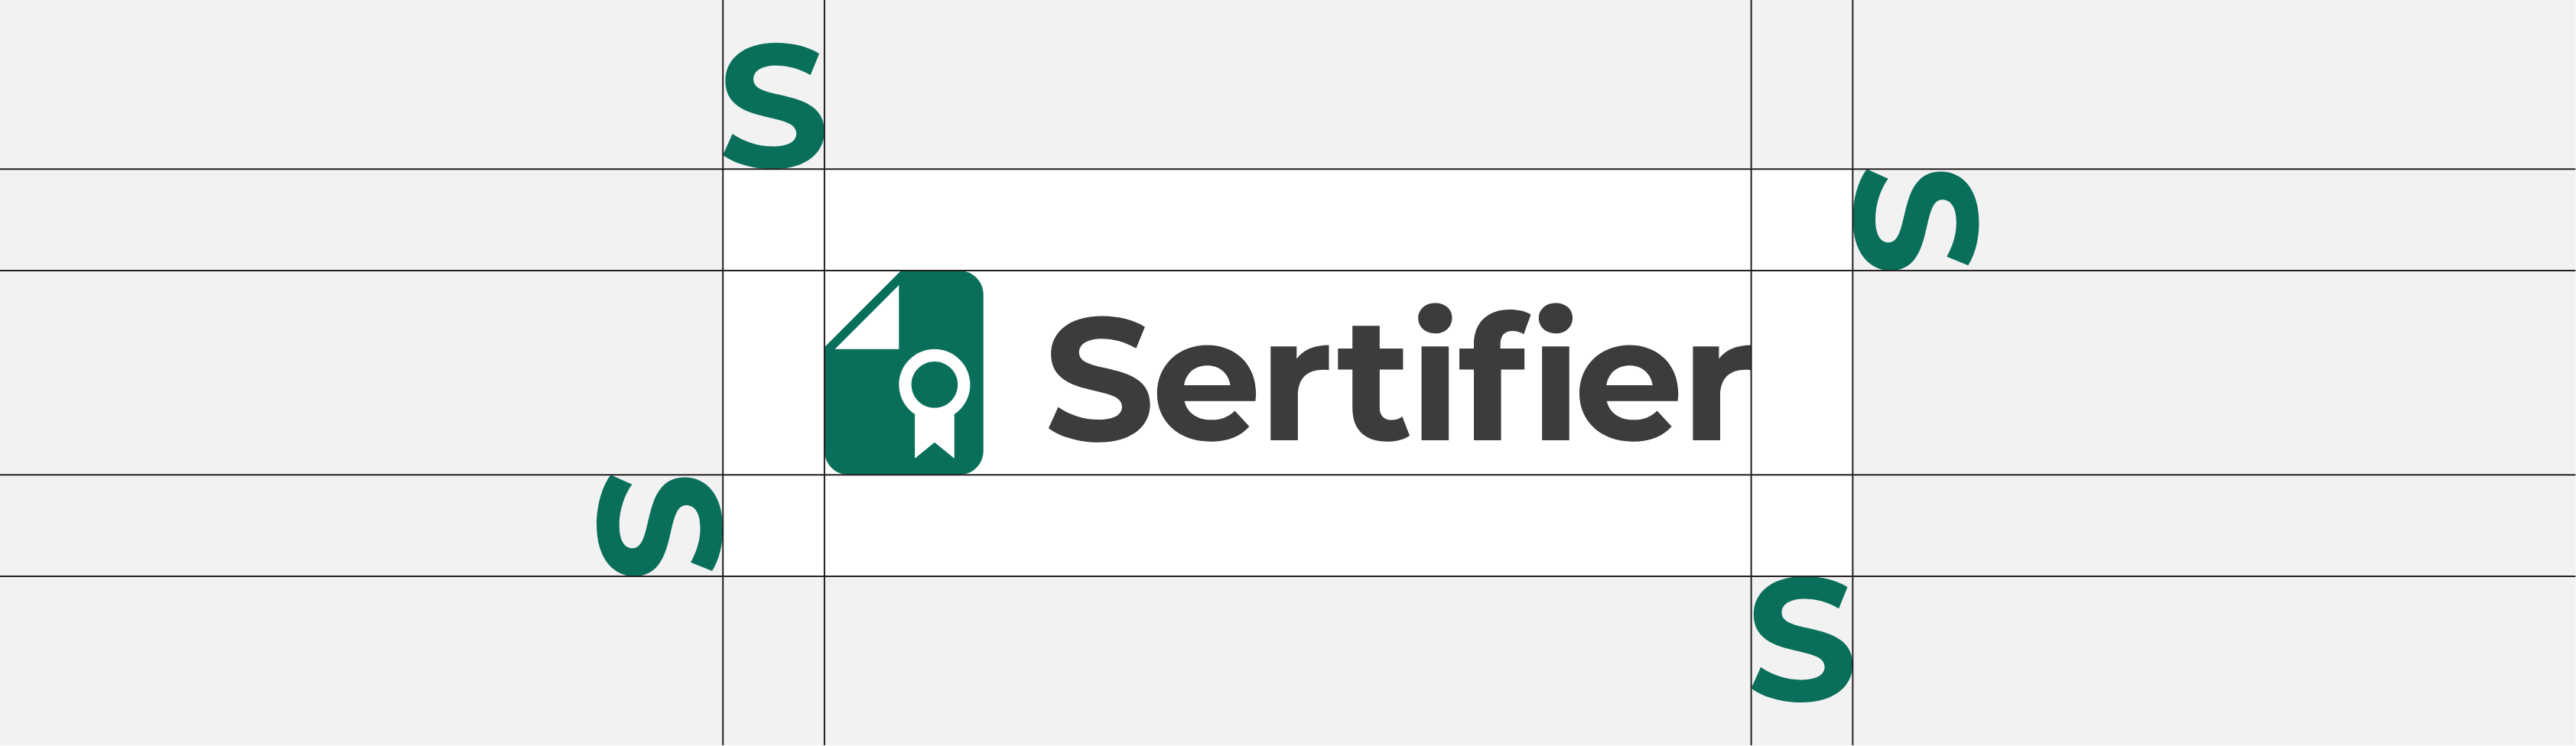 Sertifier Logo Blank Space